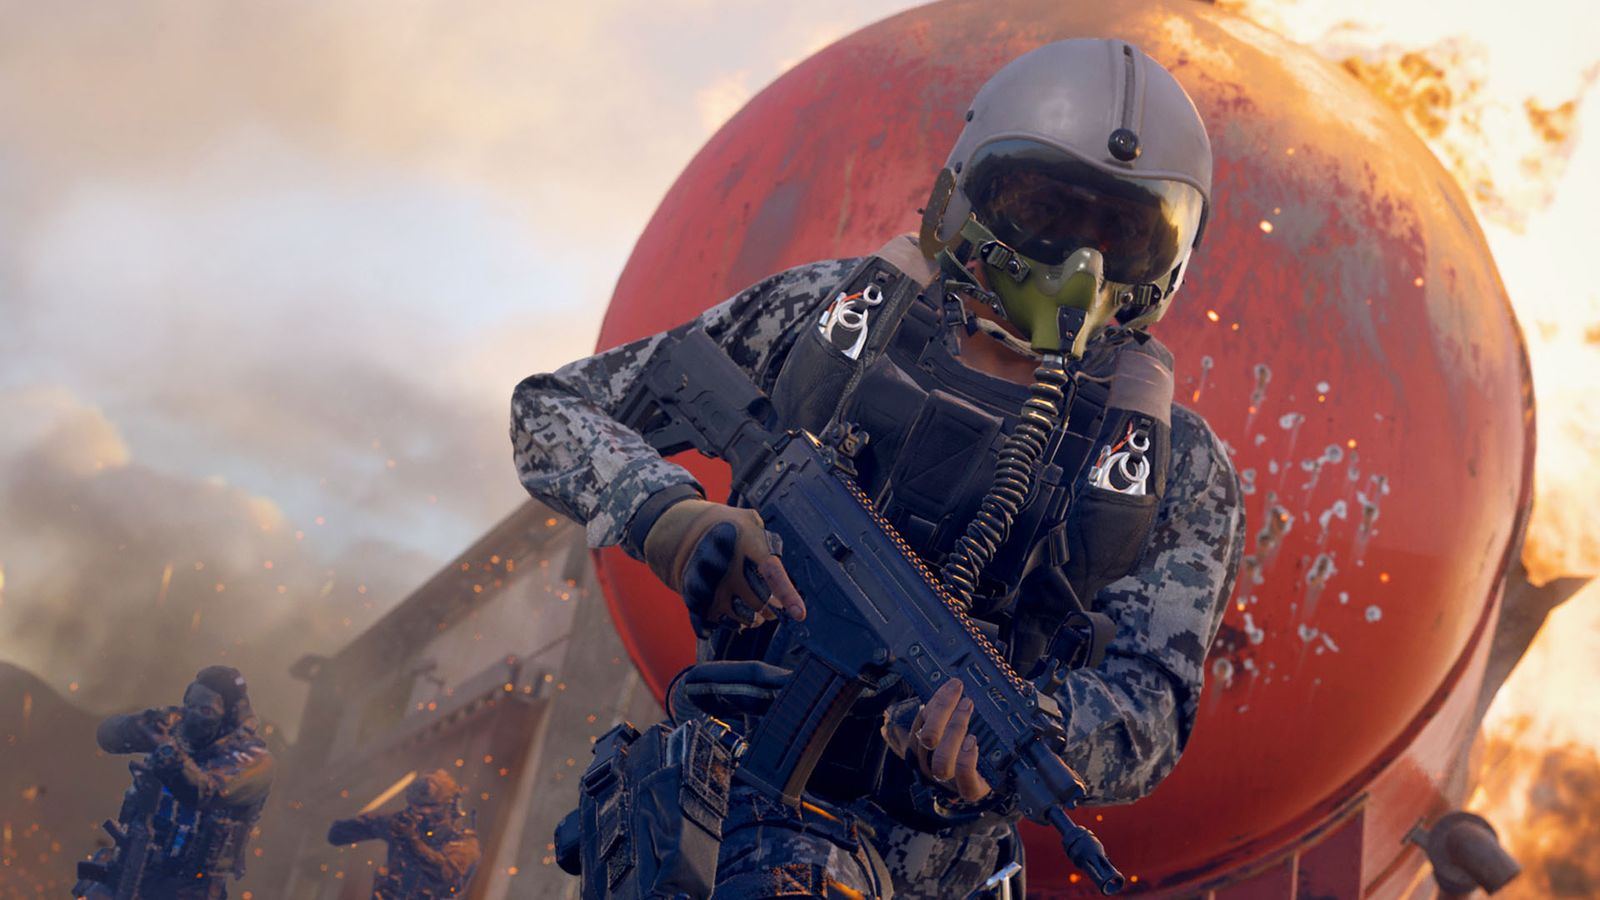 Modern Warfare 3 player wearing pilot hemlet and carrying assault rifle 